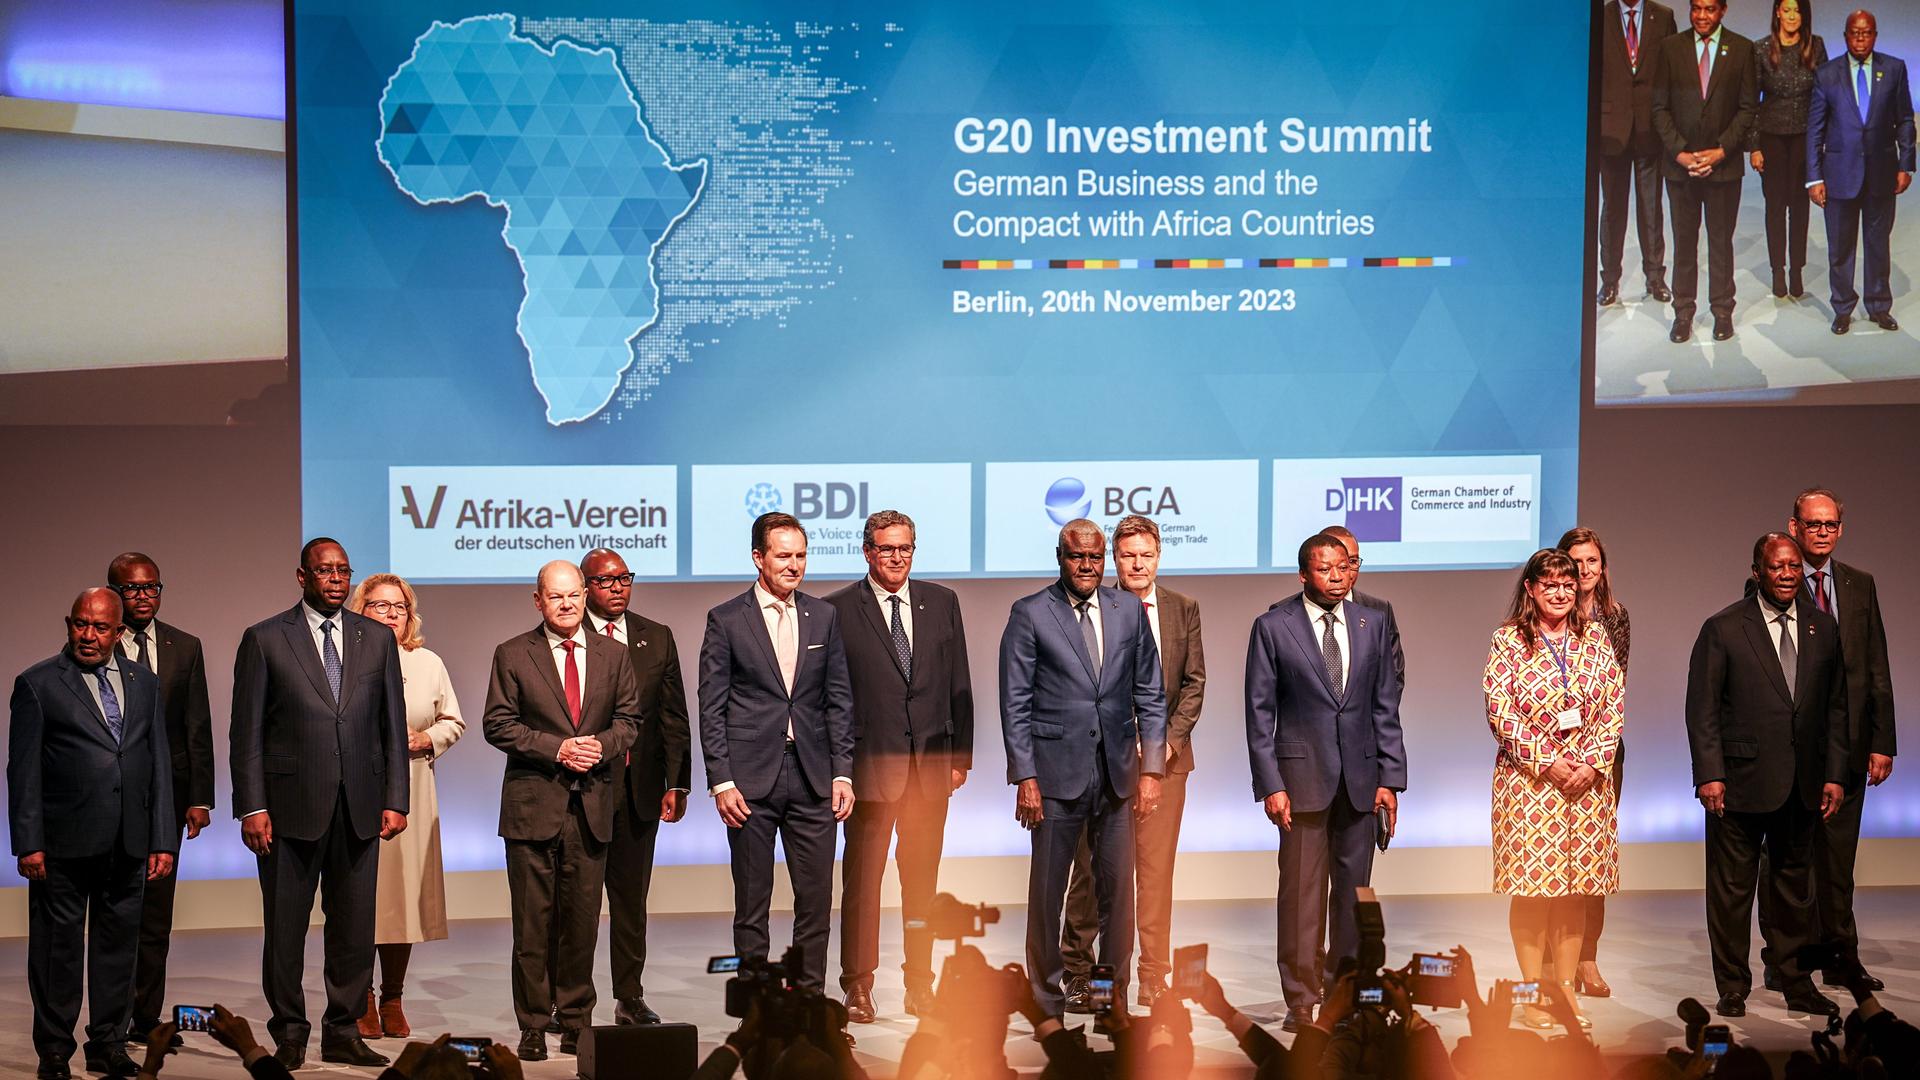 Berlin: Bundeskanzler Olaf Scholz (5.vl, SPD) steht zusammen mit den Staats- und Regierungschefs afrikanischer Staaten und Kabinettsmitgliedern beim "Compact with Africa" - Konferenz G20 Investment Summit 2023 für ein Familienfoto zusammen.